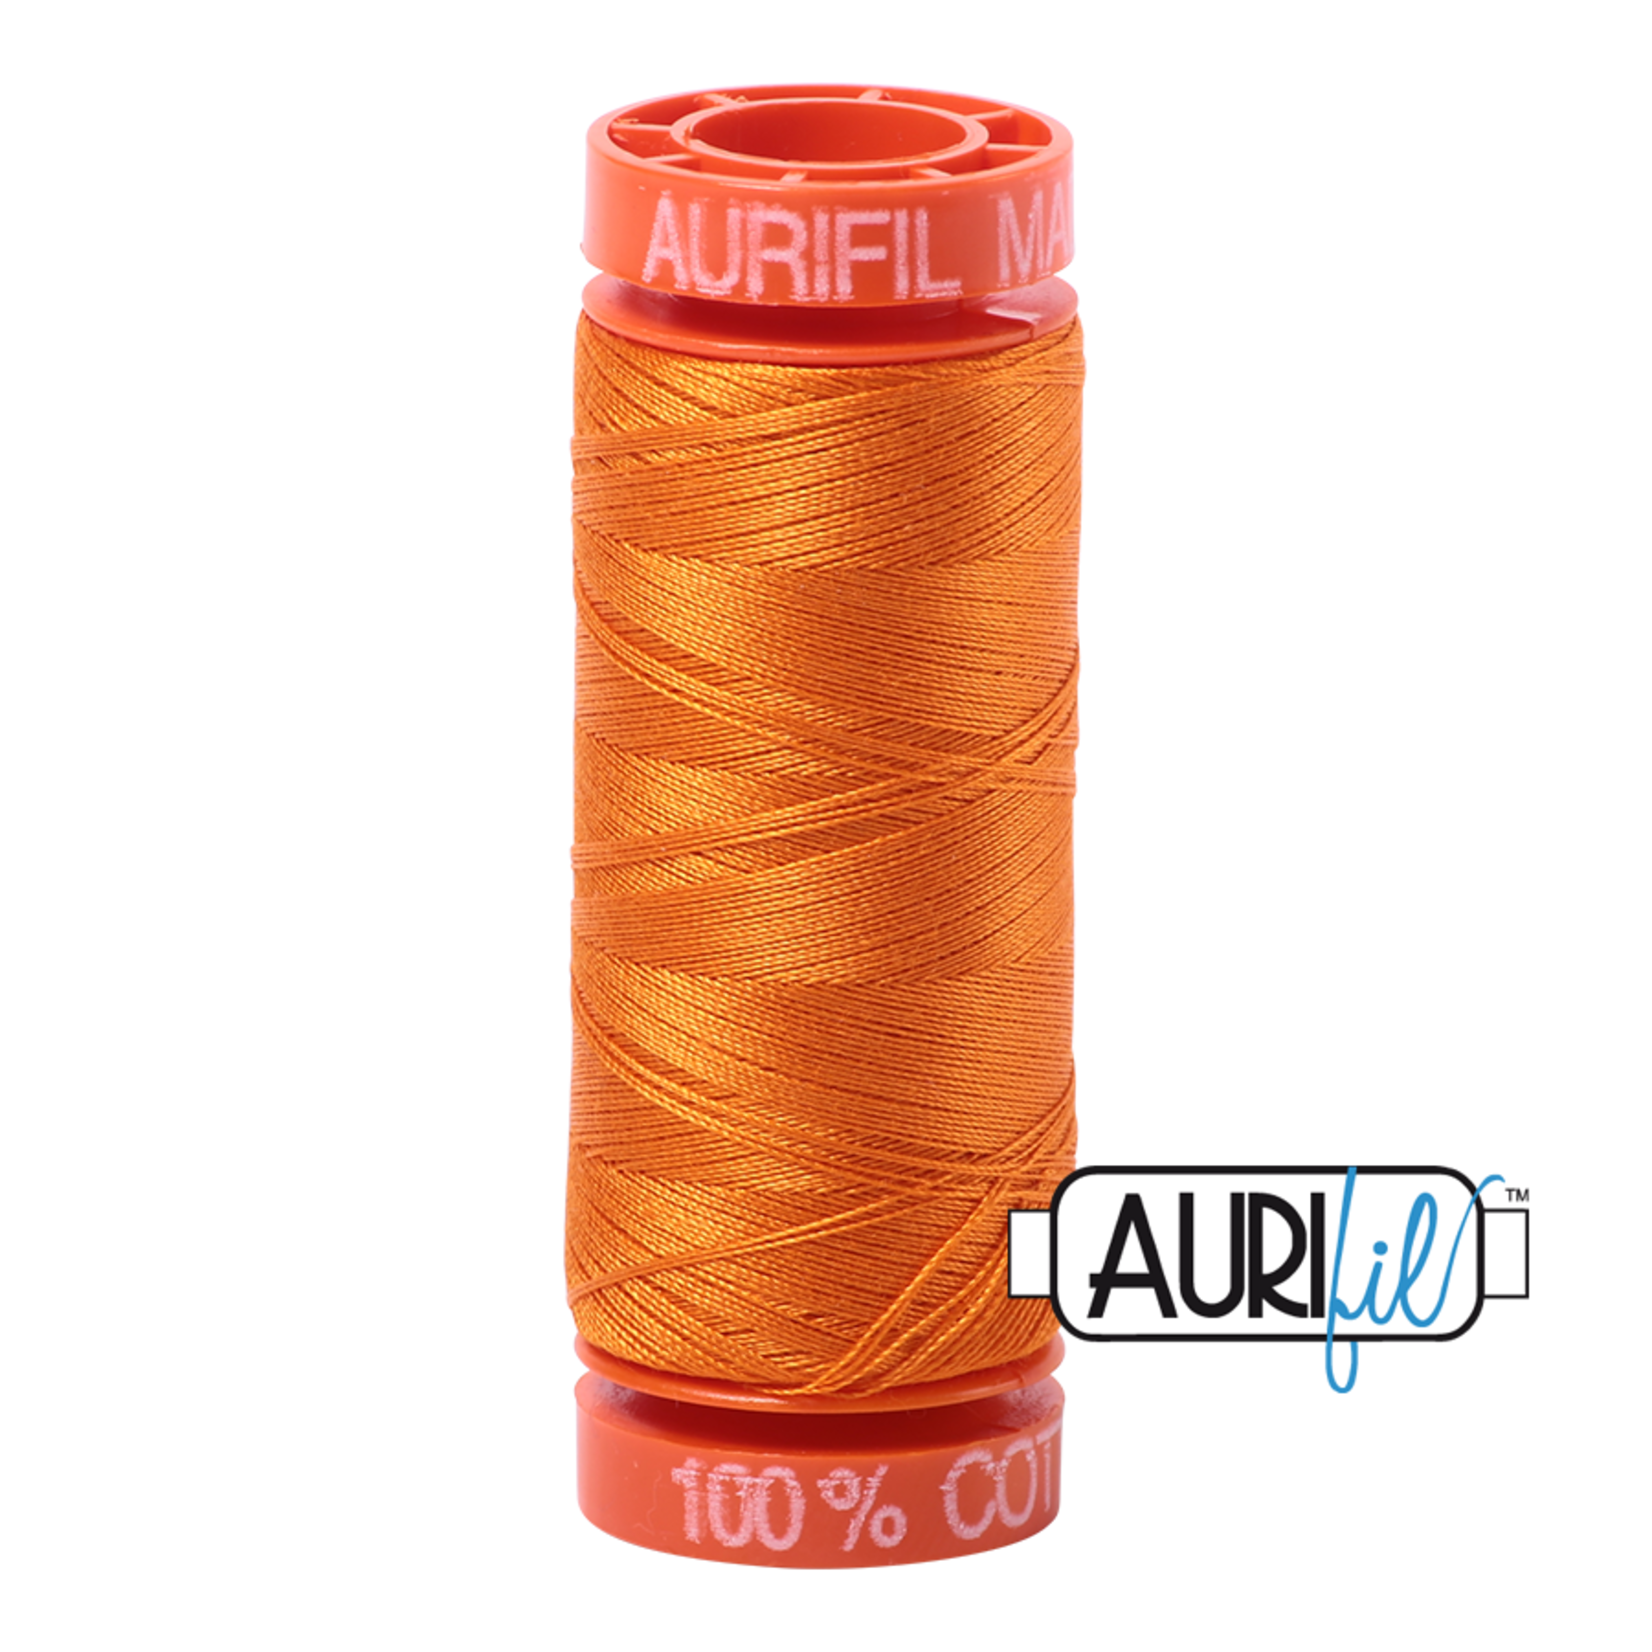 AURIFIL AURIFIL 50 WT Bright Orange 1133 Small Spool